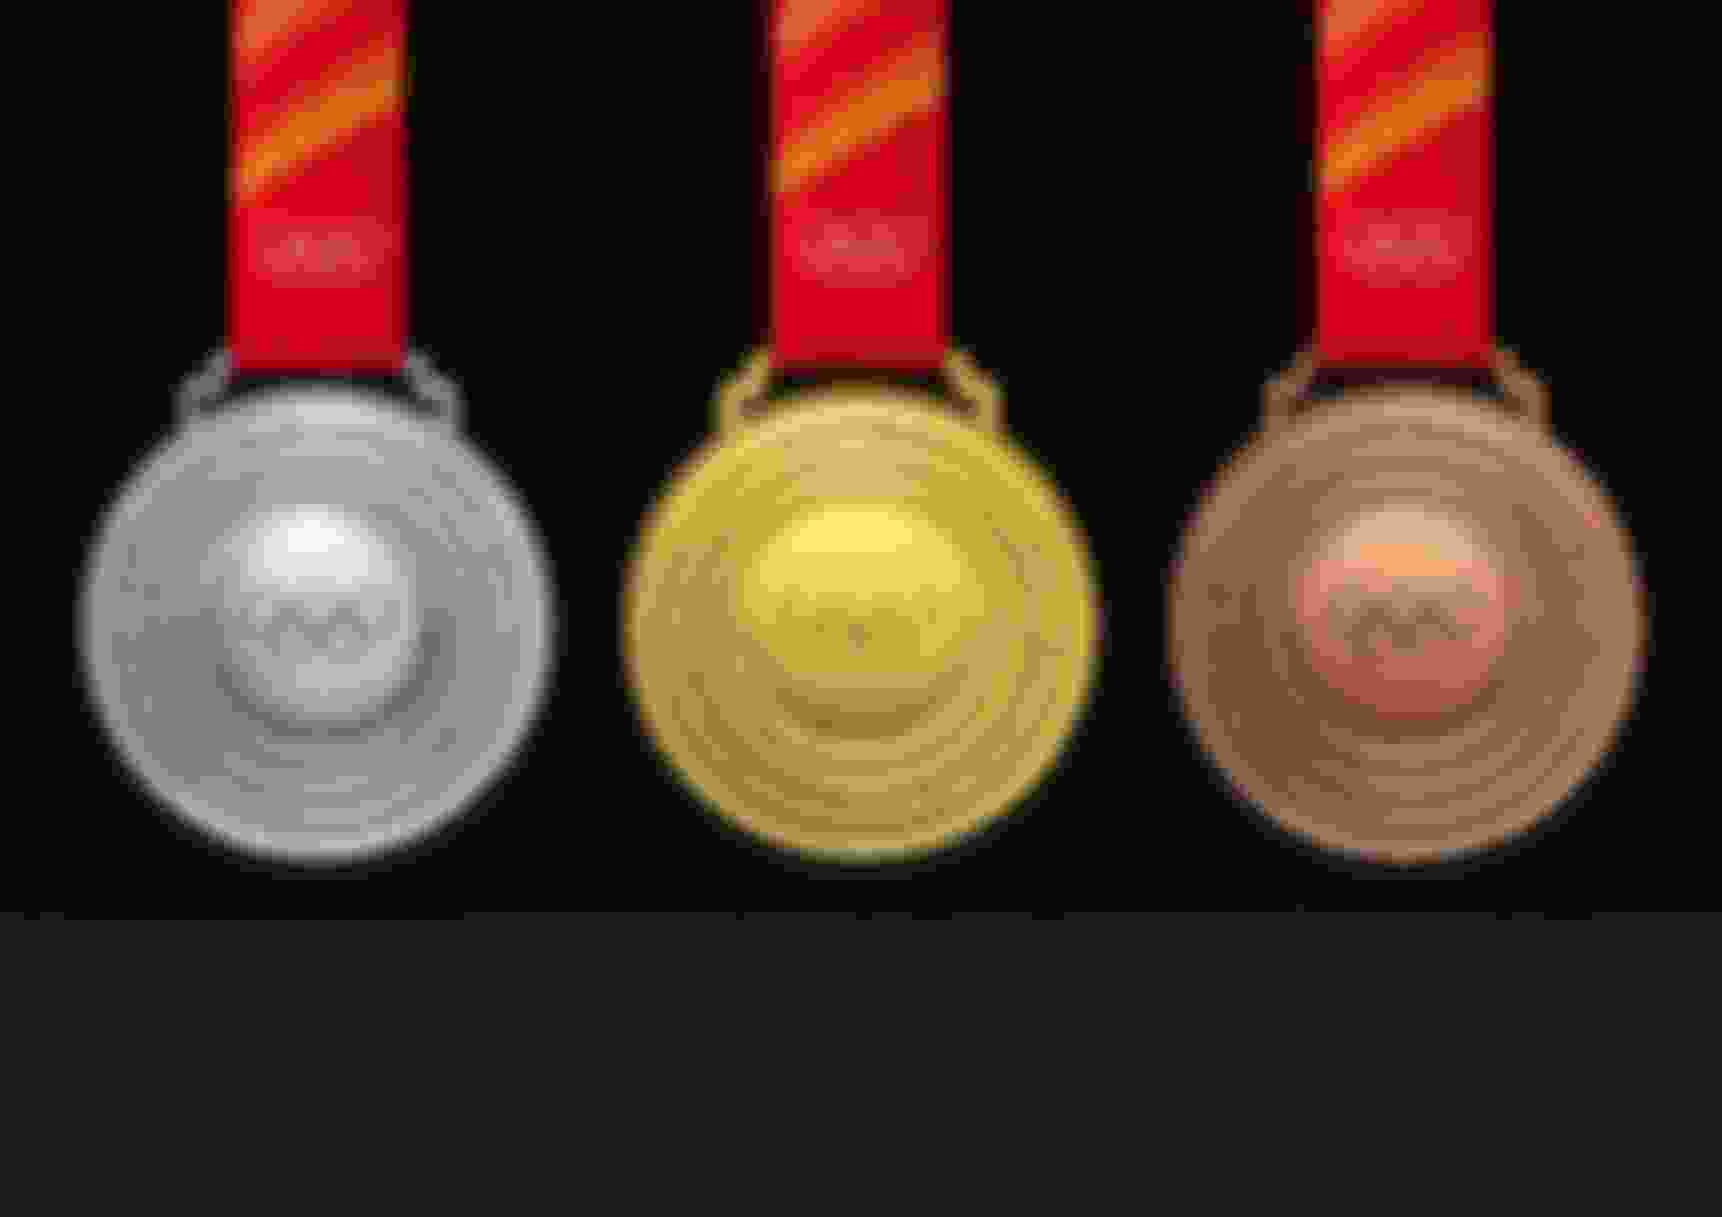 B22 medals